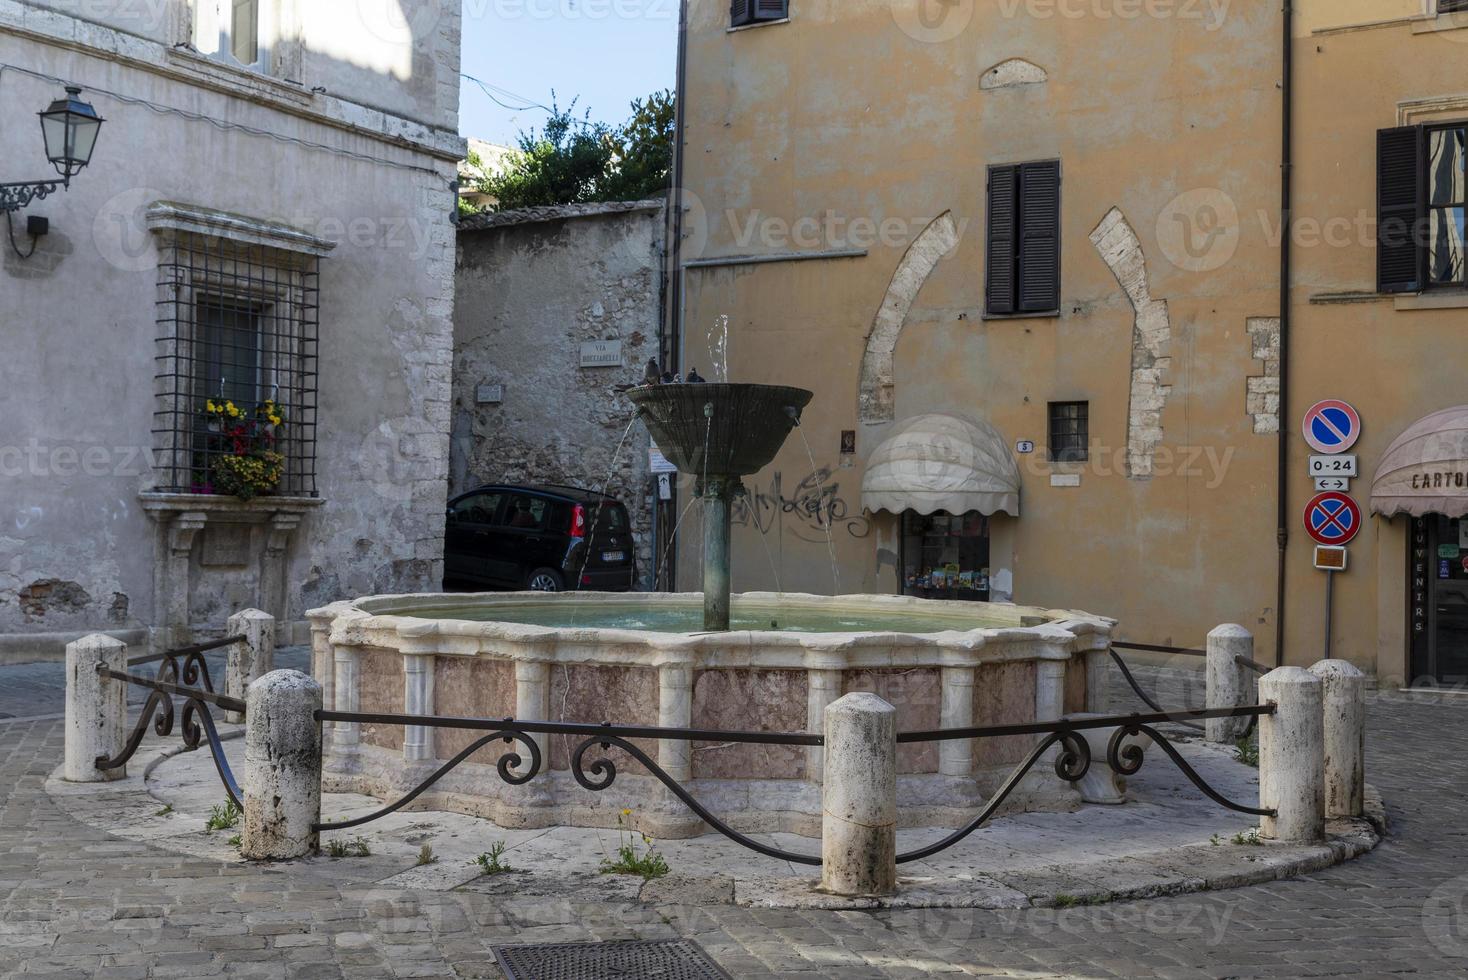 fontän på torget av priori i mitten av Narni, Italien, 2020 foto